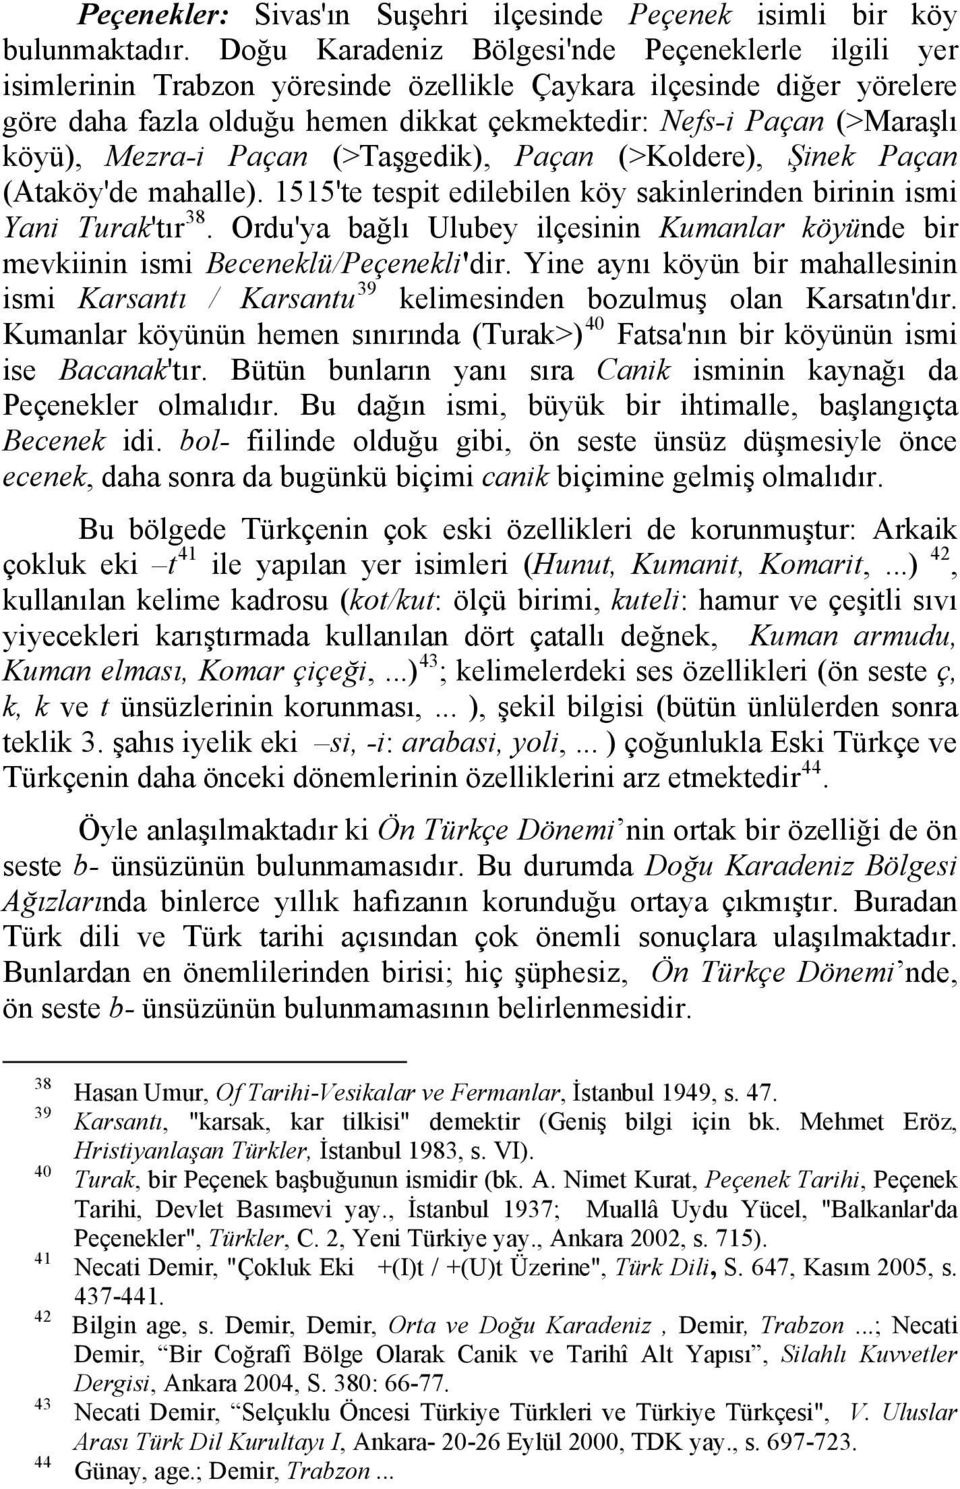 köyü), Mezra-i Paçan (>Taşgedik), Paçan (>Koldere), Şinek Paçan (Ataköy'de mahalle). 1515'te tespit edilebilen köy sakinlerinden birinin ismi Yani Turak'tır 38.